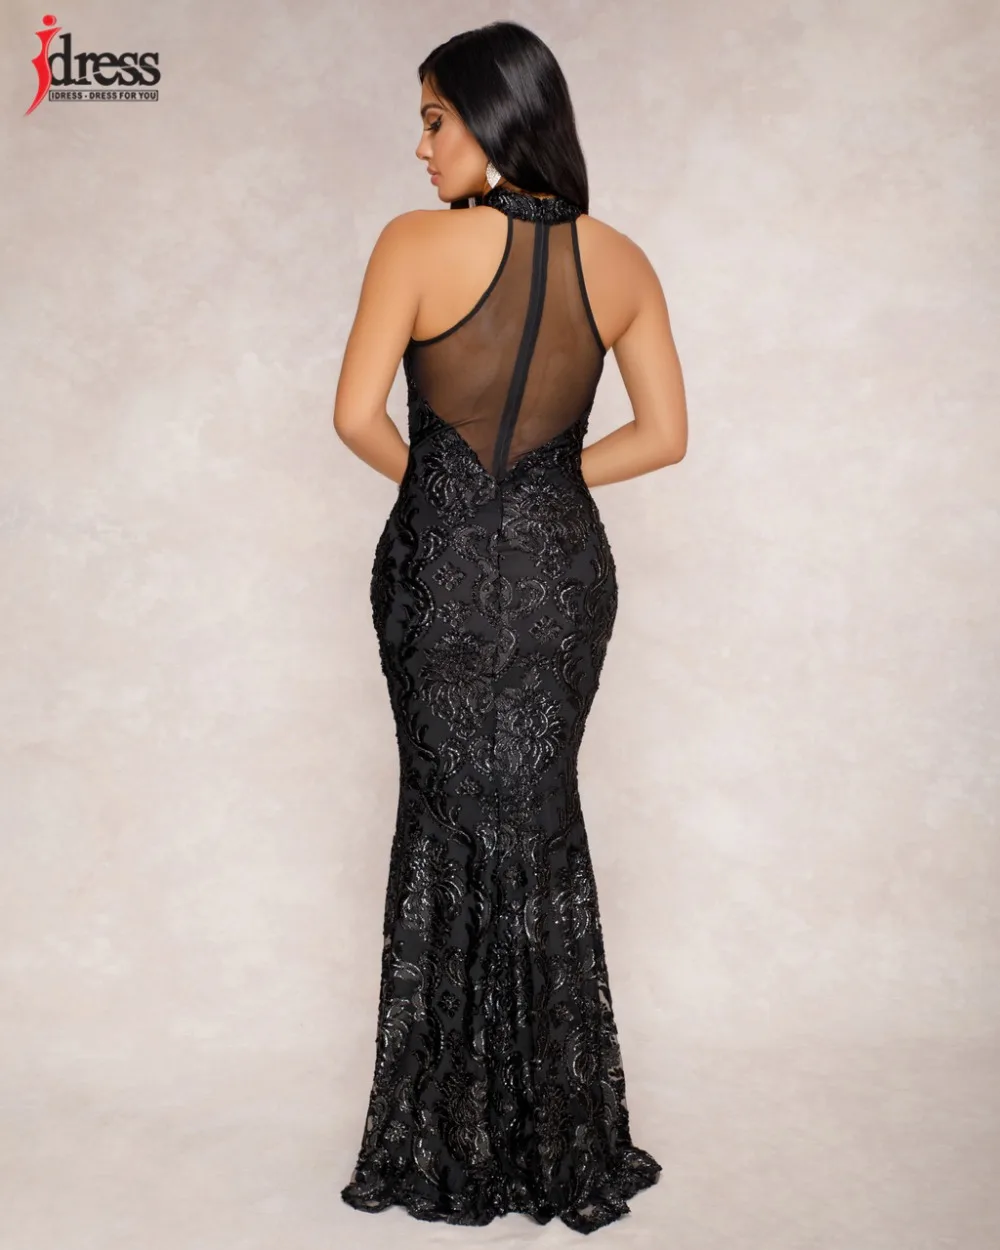 IDress высокое качество женское летнее Сетчатое лоскутное Прозрачное платье с открытой спиной и лямкой на шее Черное Платье макси с блестками Элегантные вечерние платья